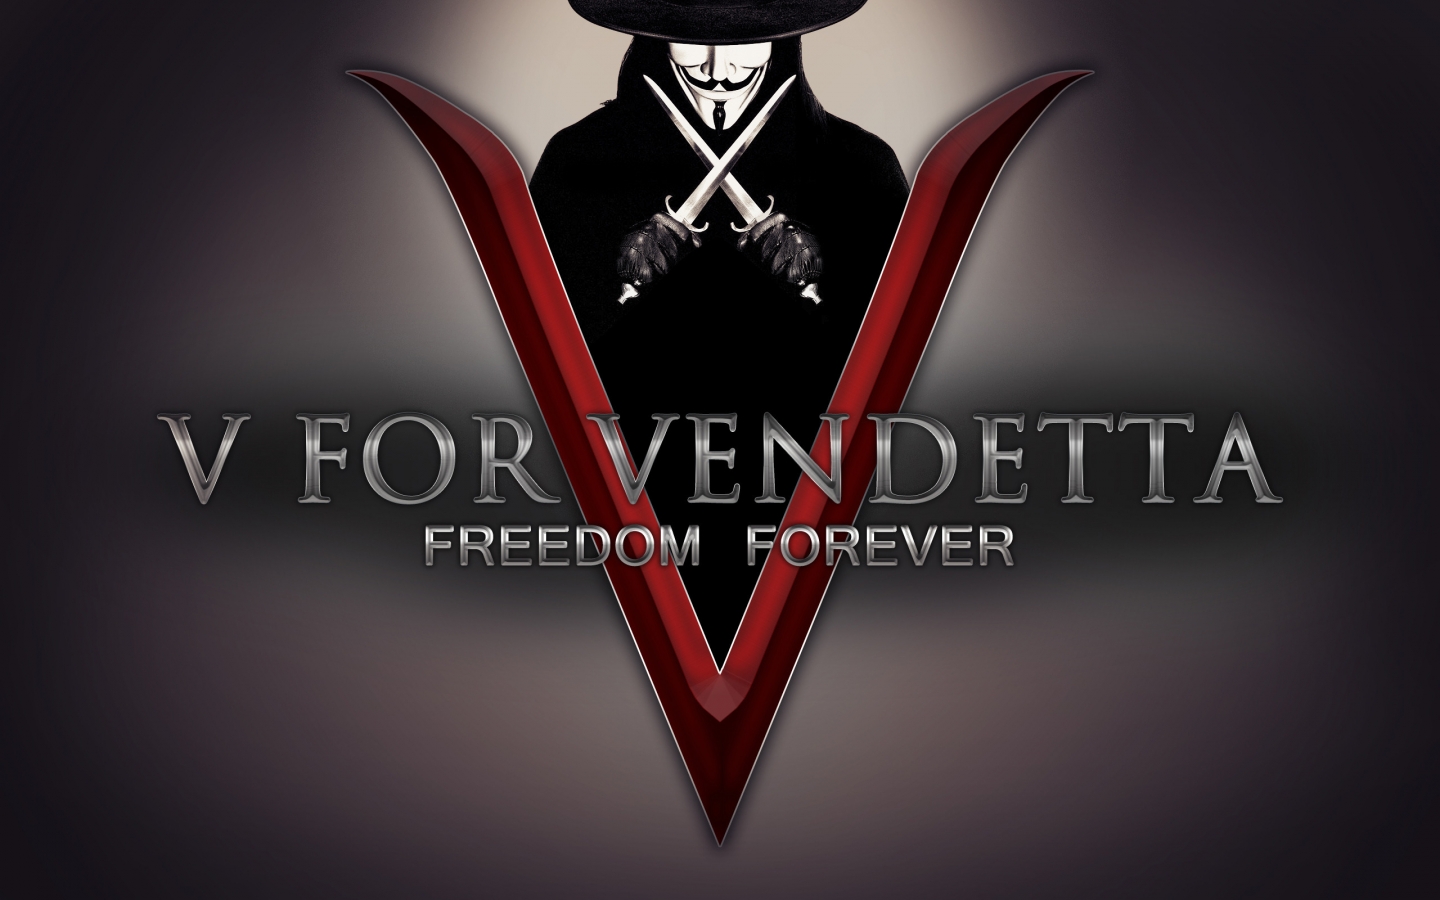 V for Vendetta Freedom Forever for 1440 x 900 widescreen resolution